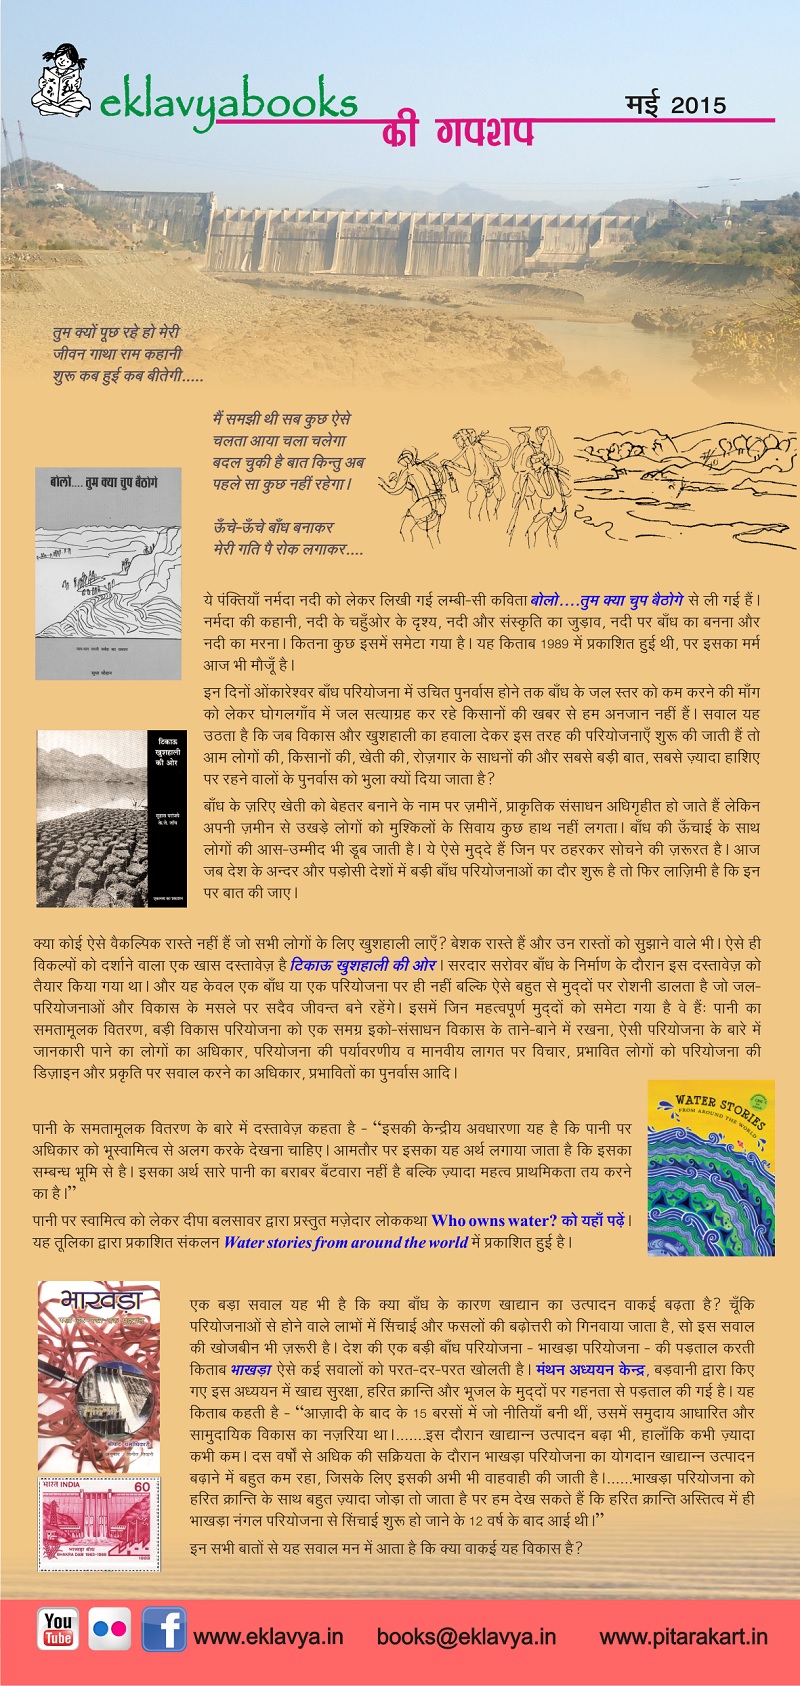 eklavyabooks ki gupshup - May 2015. Enable image for viewing newsletter